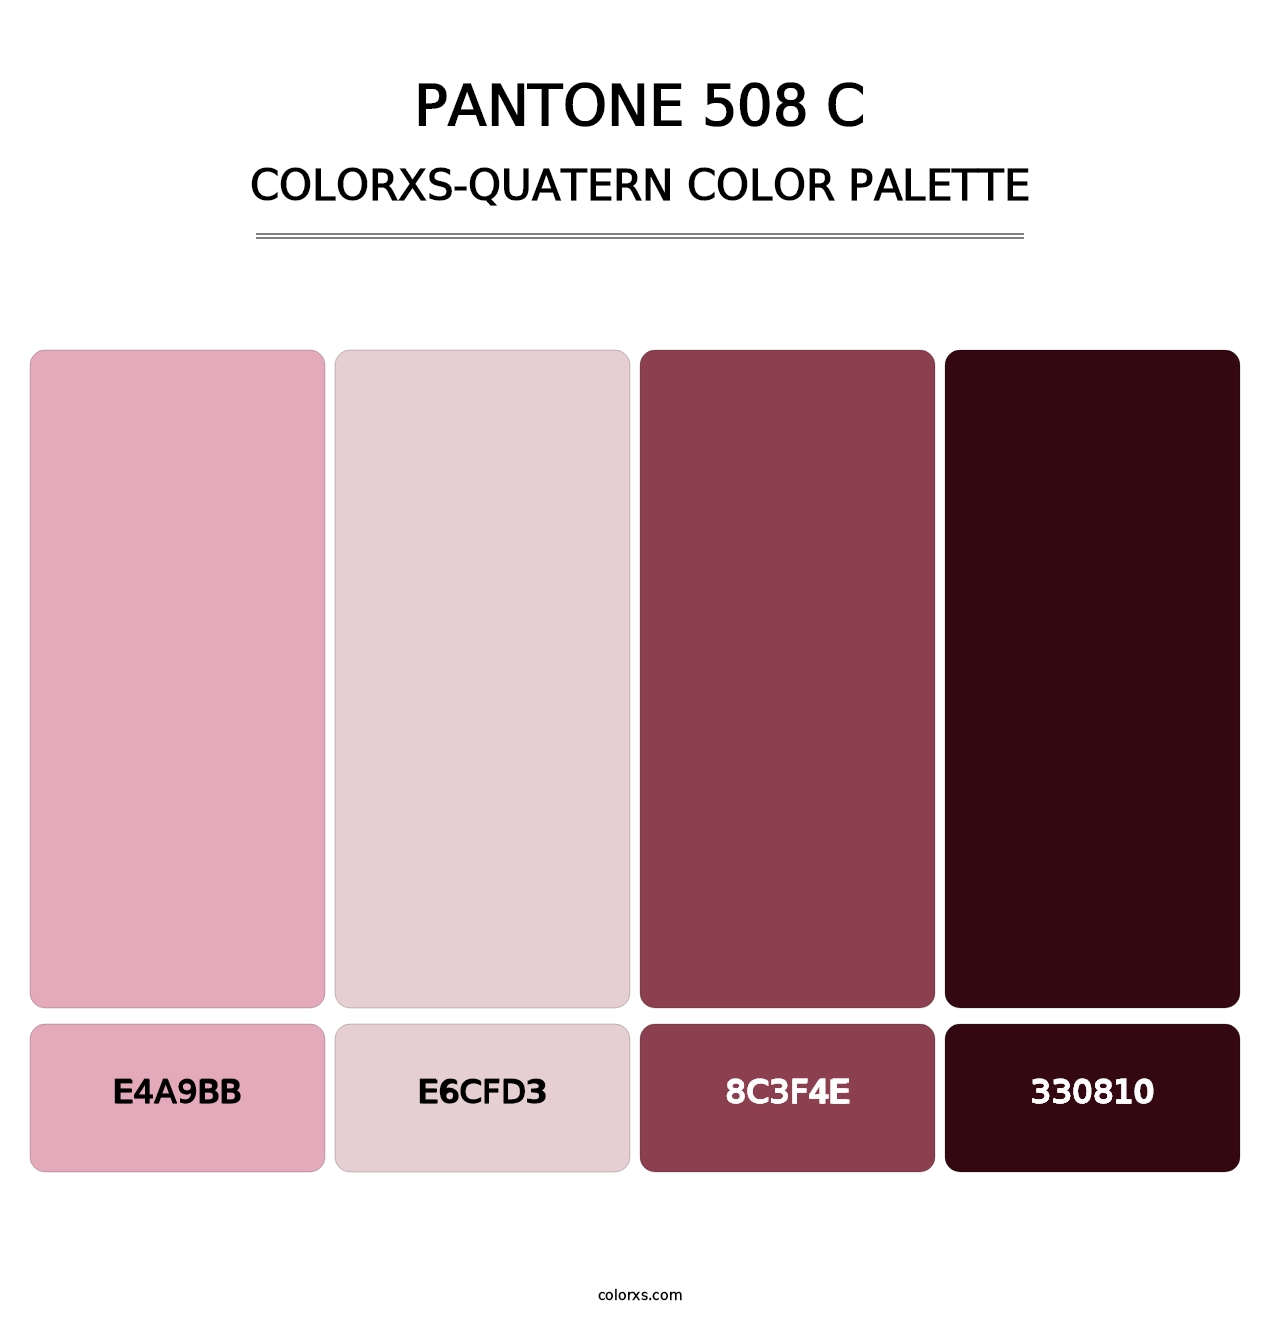 PANTONE 508 C - Colorxs Quatern Palette